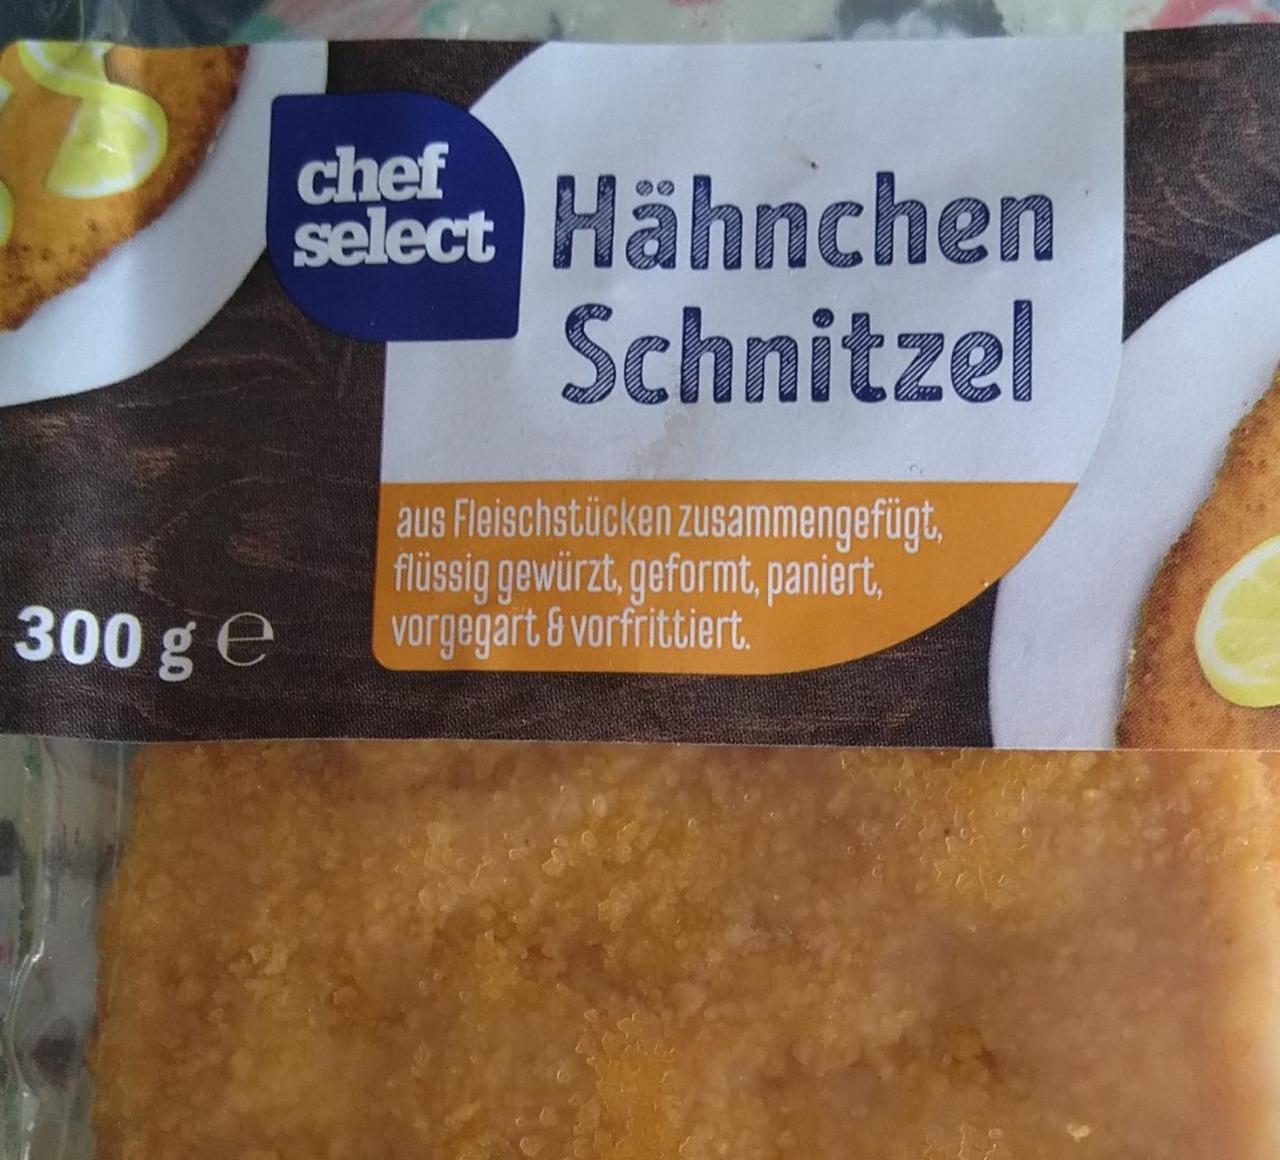 Chef nutriční kJ kalorie, Hähnchen Schnitzel hodnoty Select - a